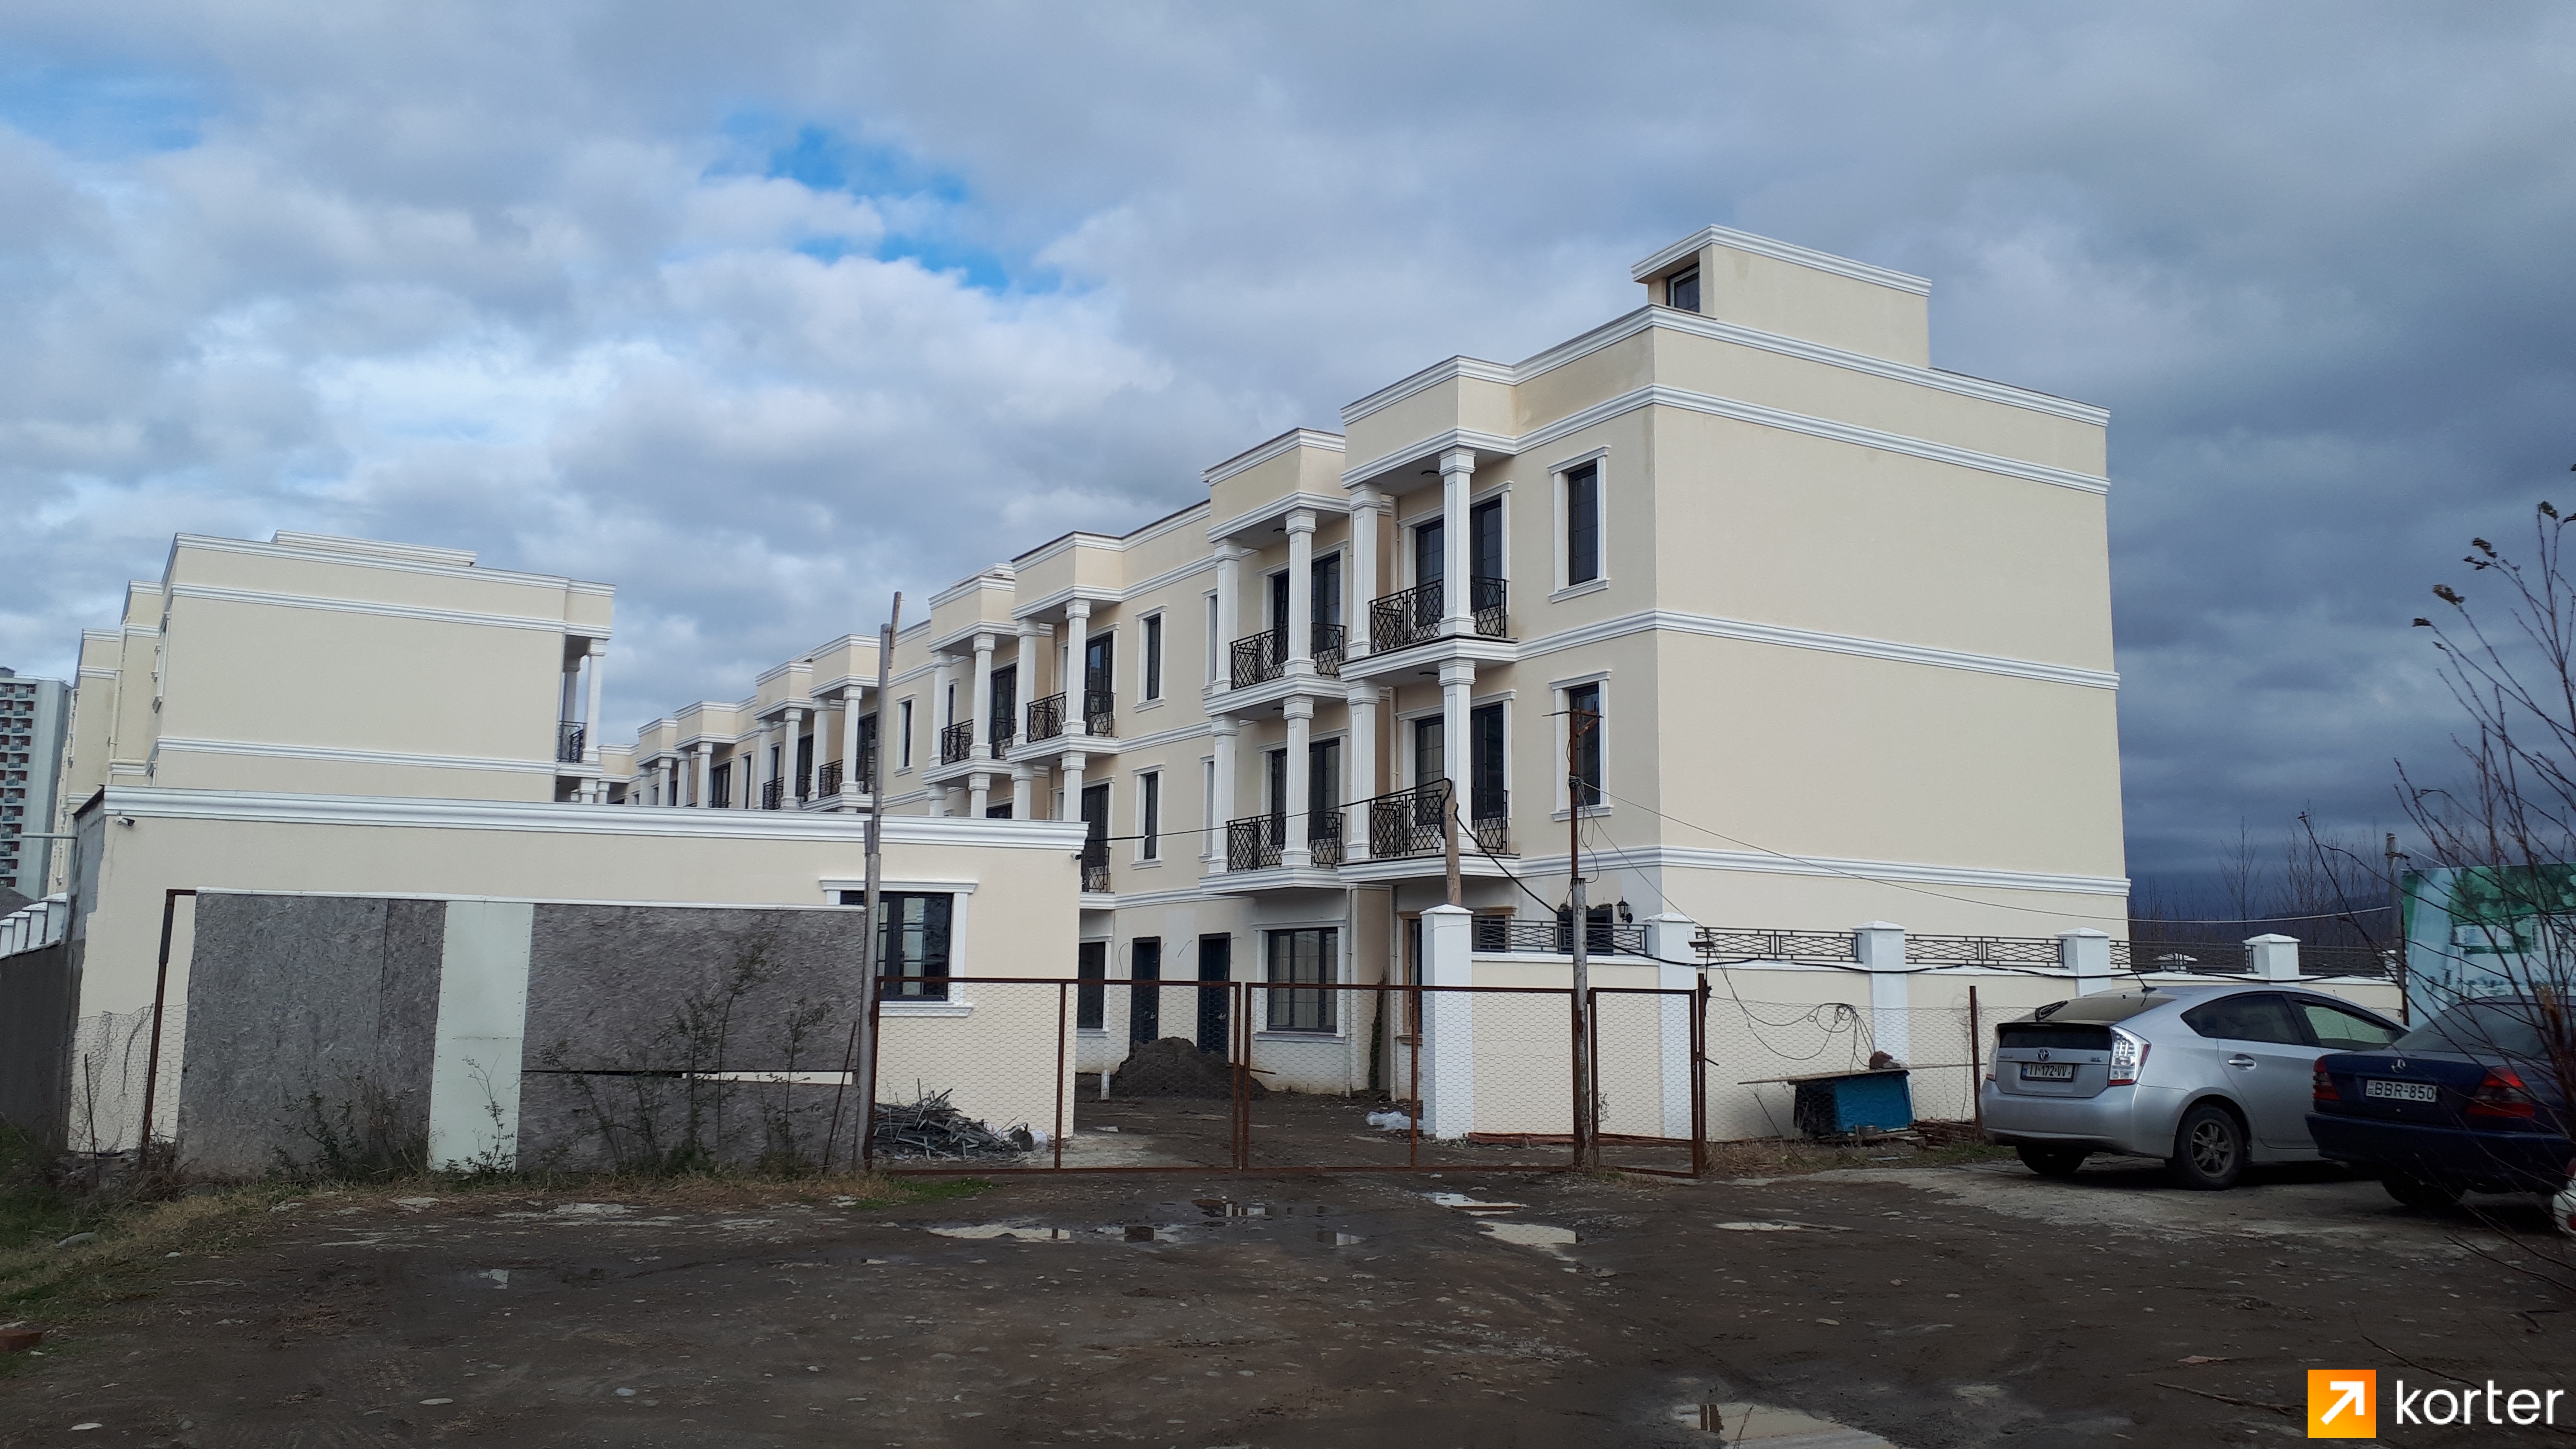 Construction progress Batumi Villas - Angle 1, February 2021